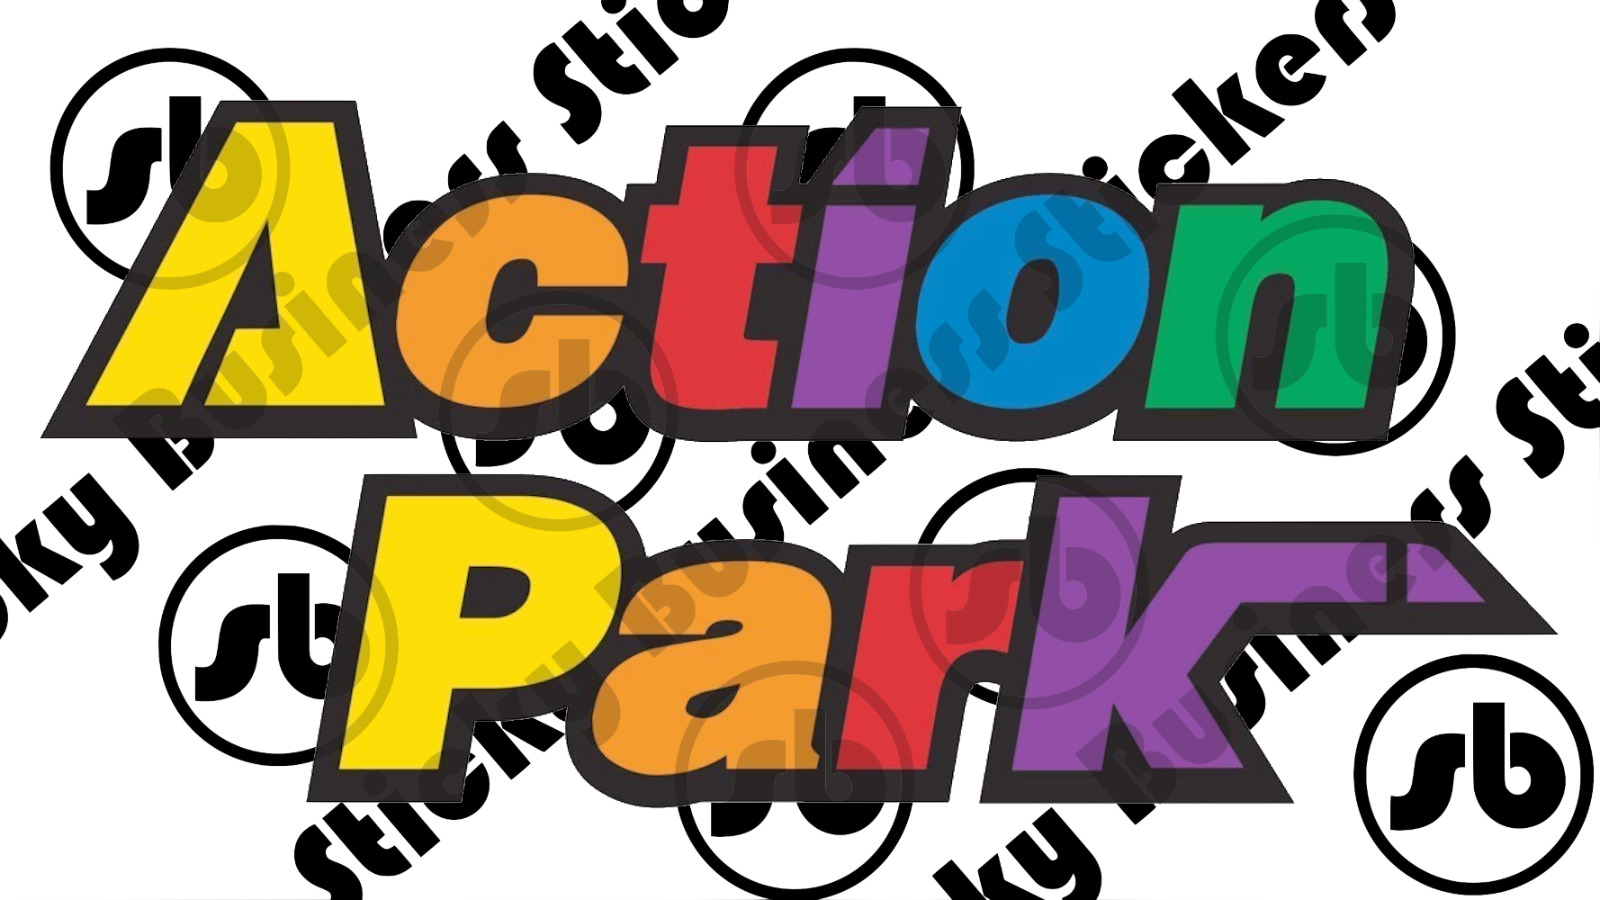 Action Park Sticker Vernon New Jersey Amusement Park 5 inch Vinyl Sticker